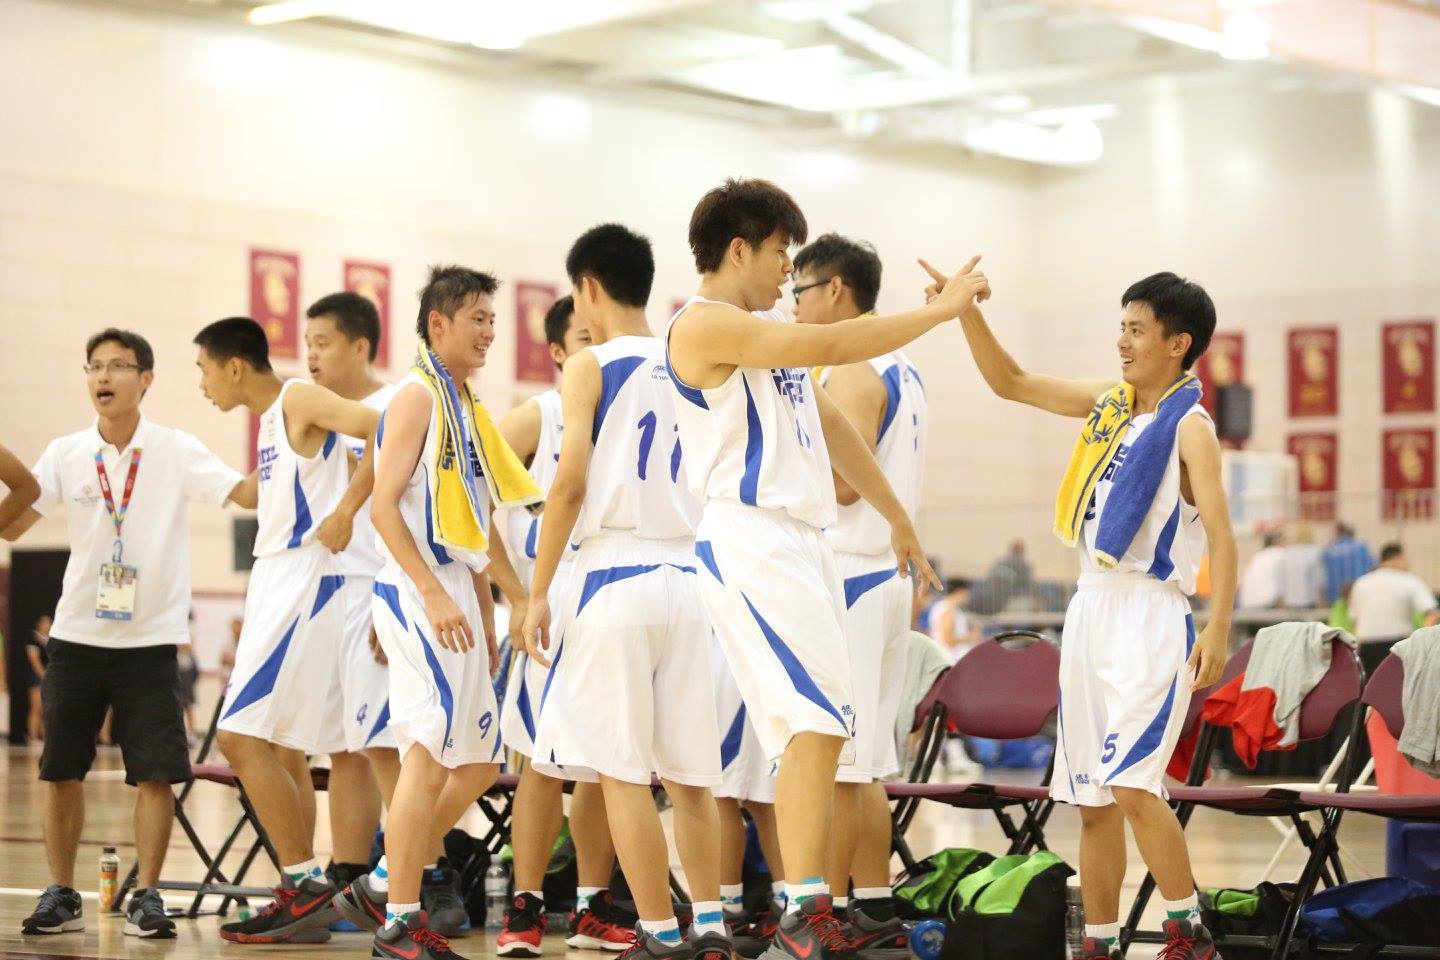 籃球是臺灣最常參與夏季特奧會的運動項目之一。